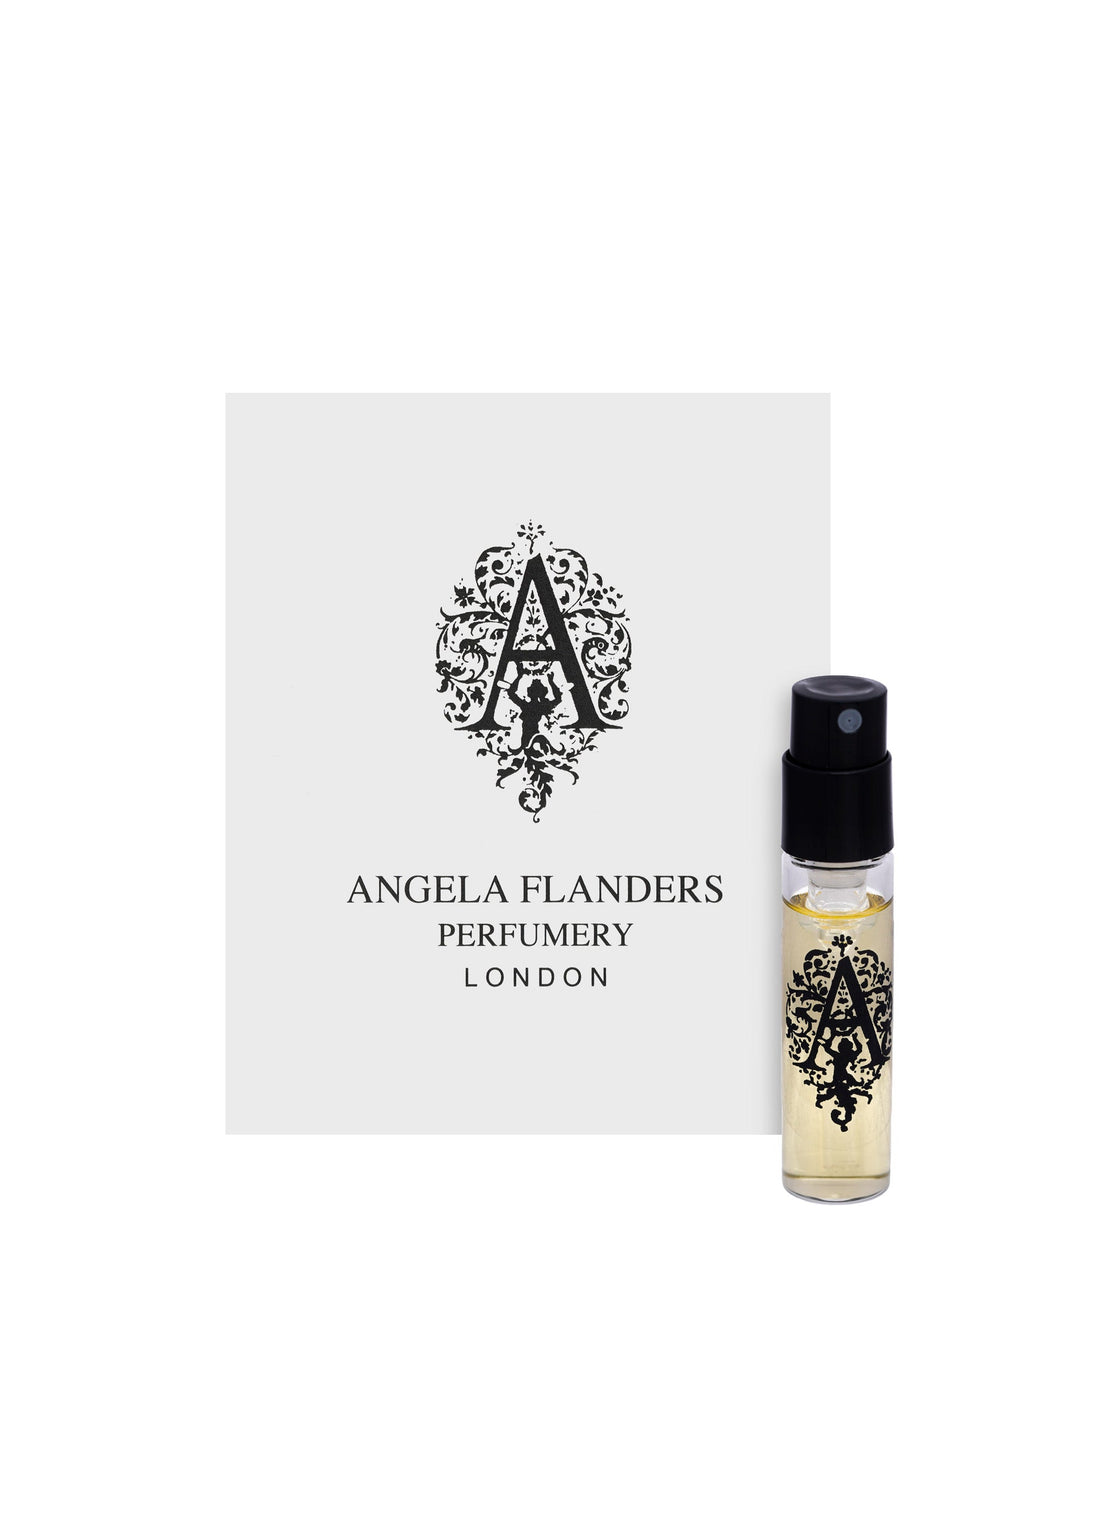 Angela Flanders Oudh Bakhoor Eau de Parfum Sample